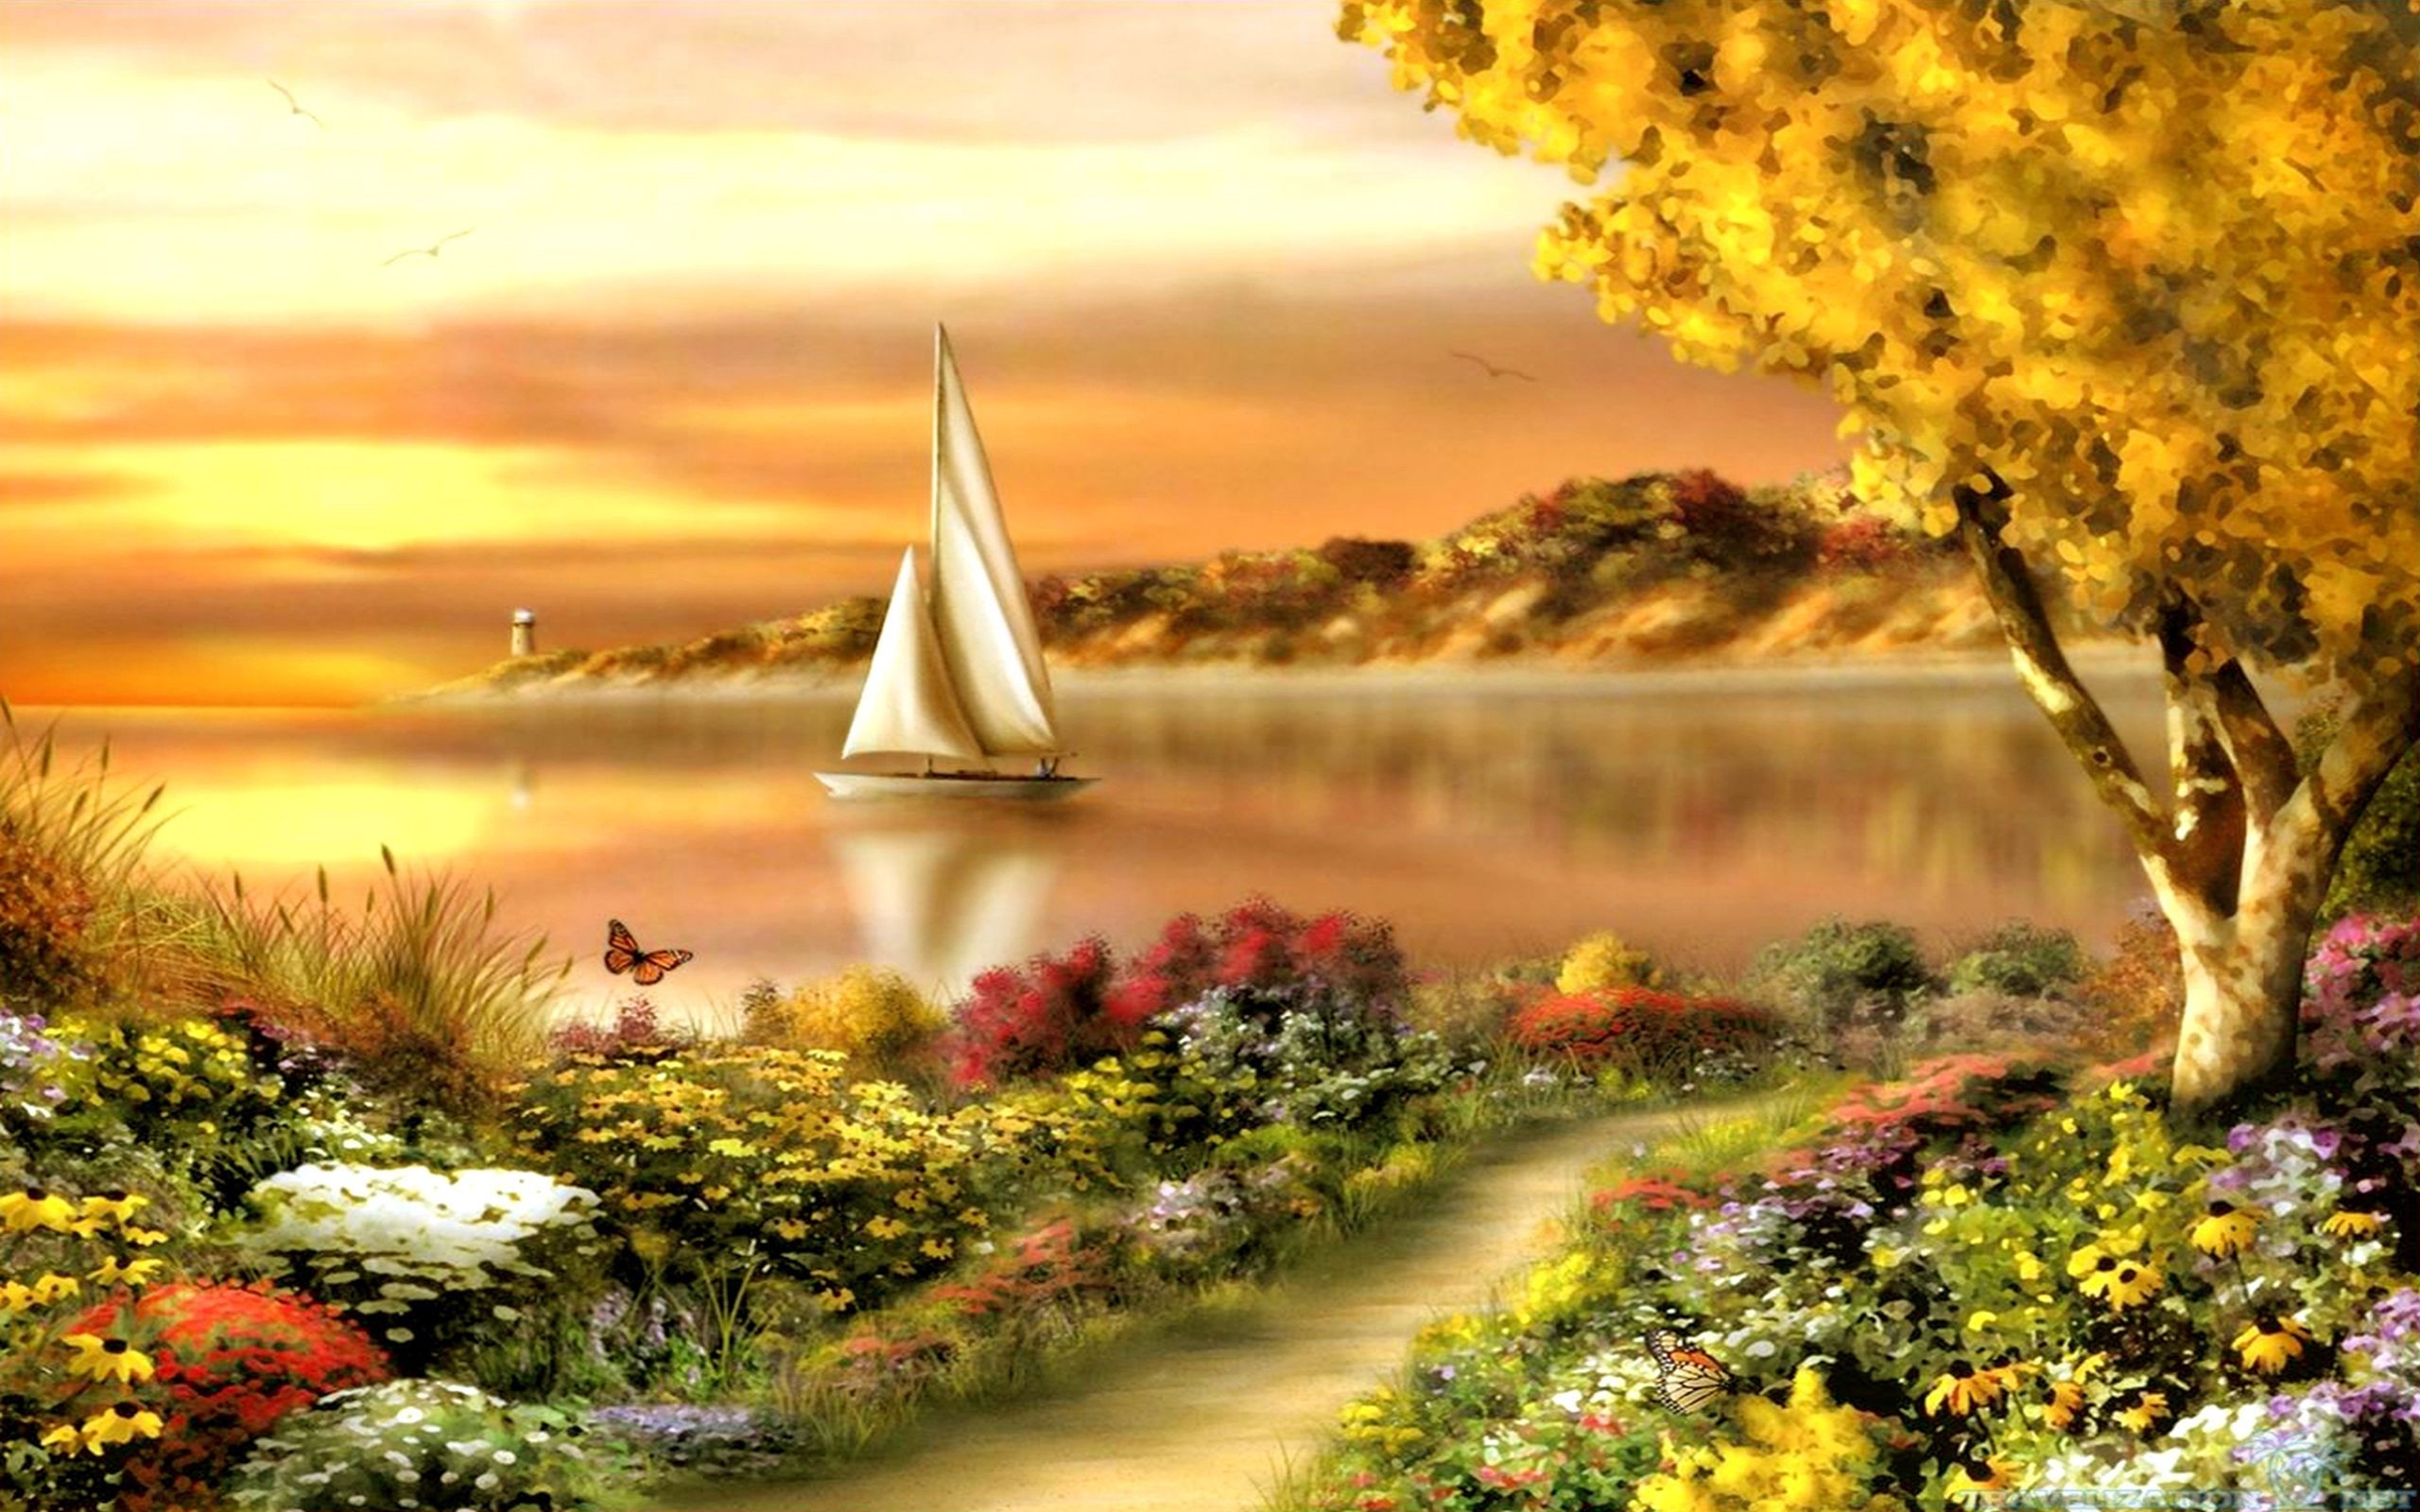 wallpaper scene,natural landscape,nature,sky,sailboat,landscape